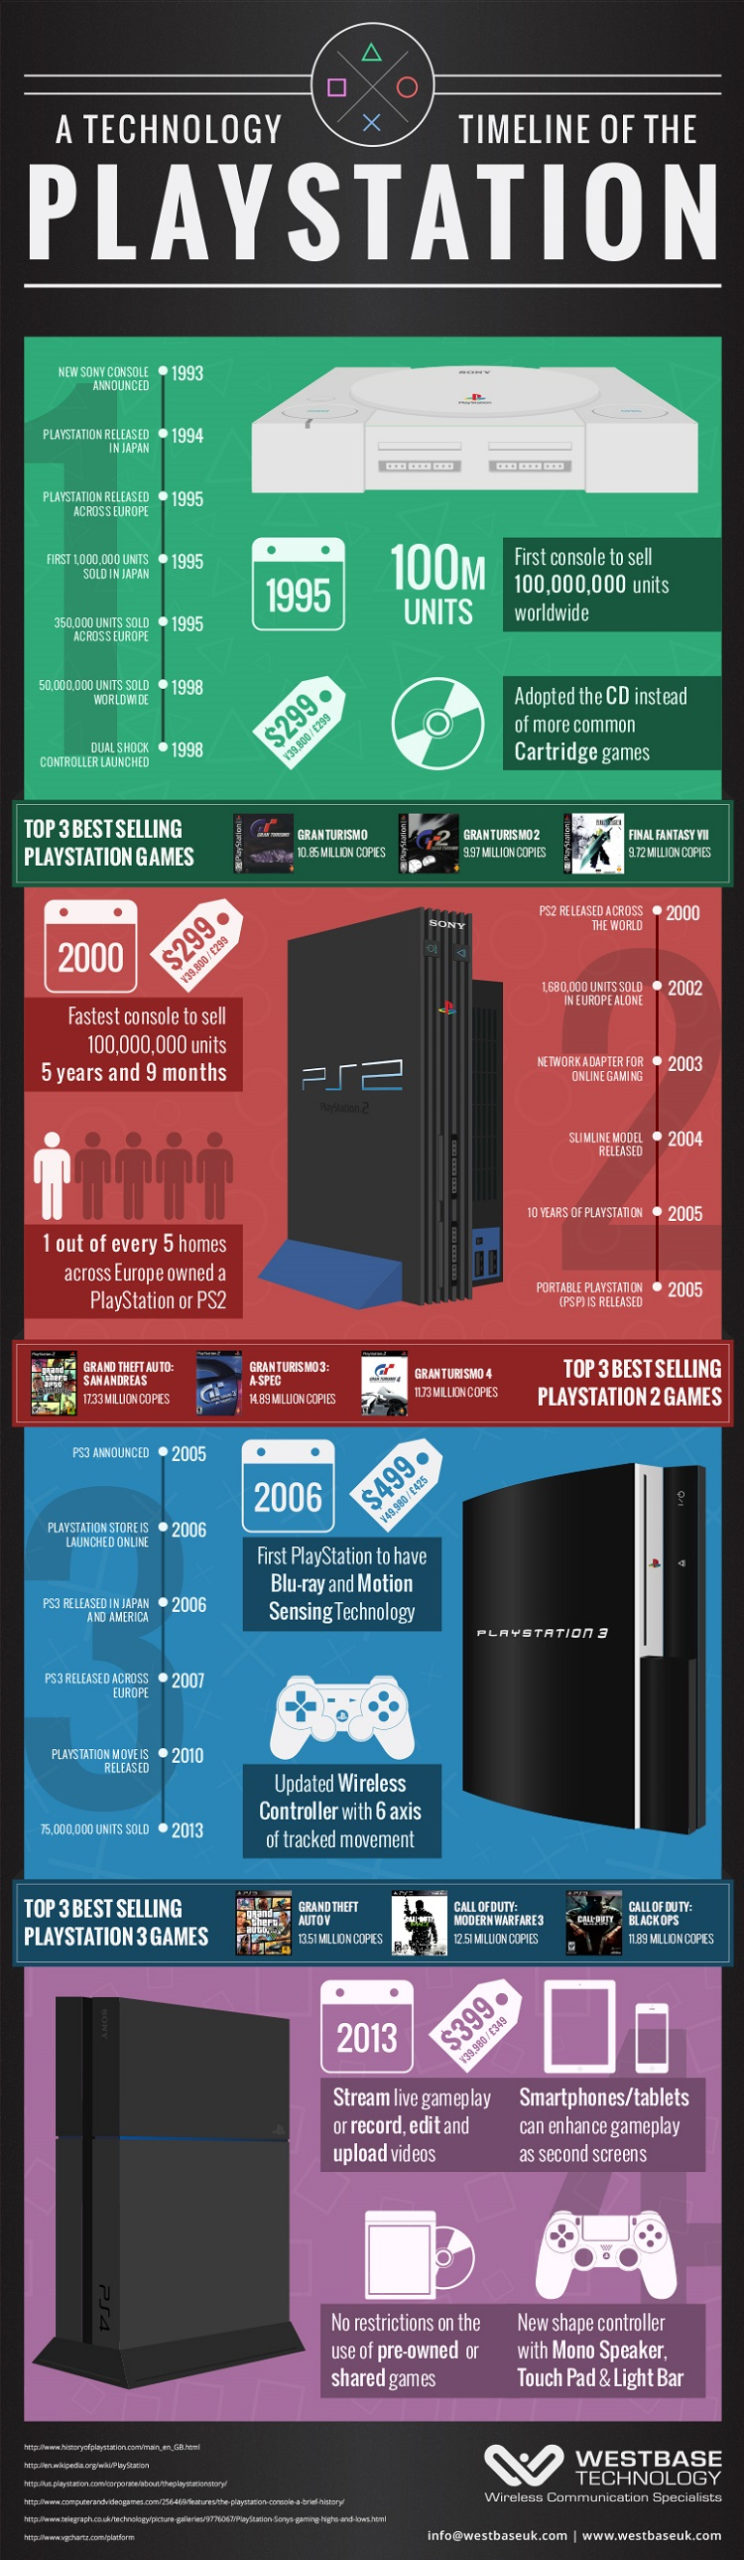 [Infographie] L'évolution de la PlayStation de 1993 à 2013